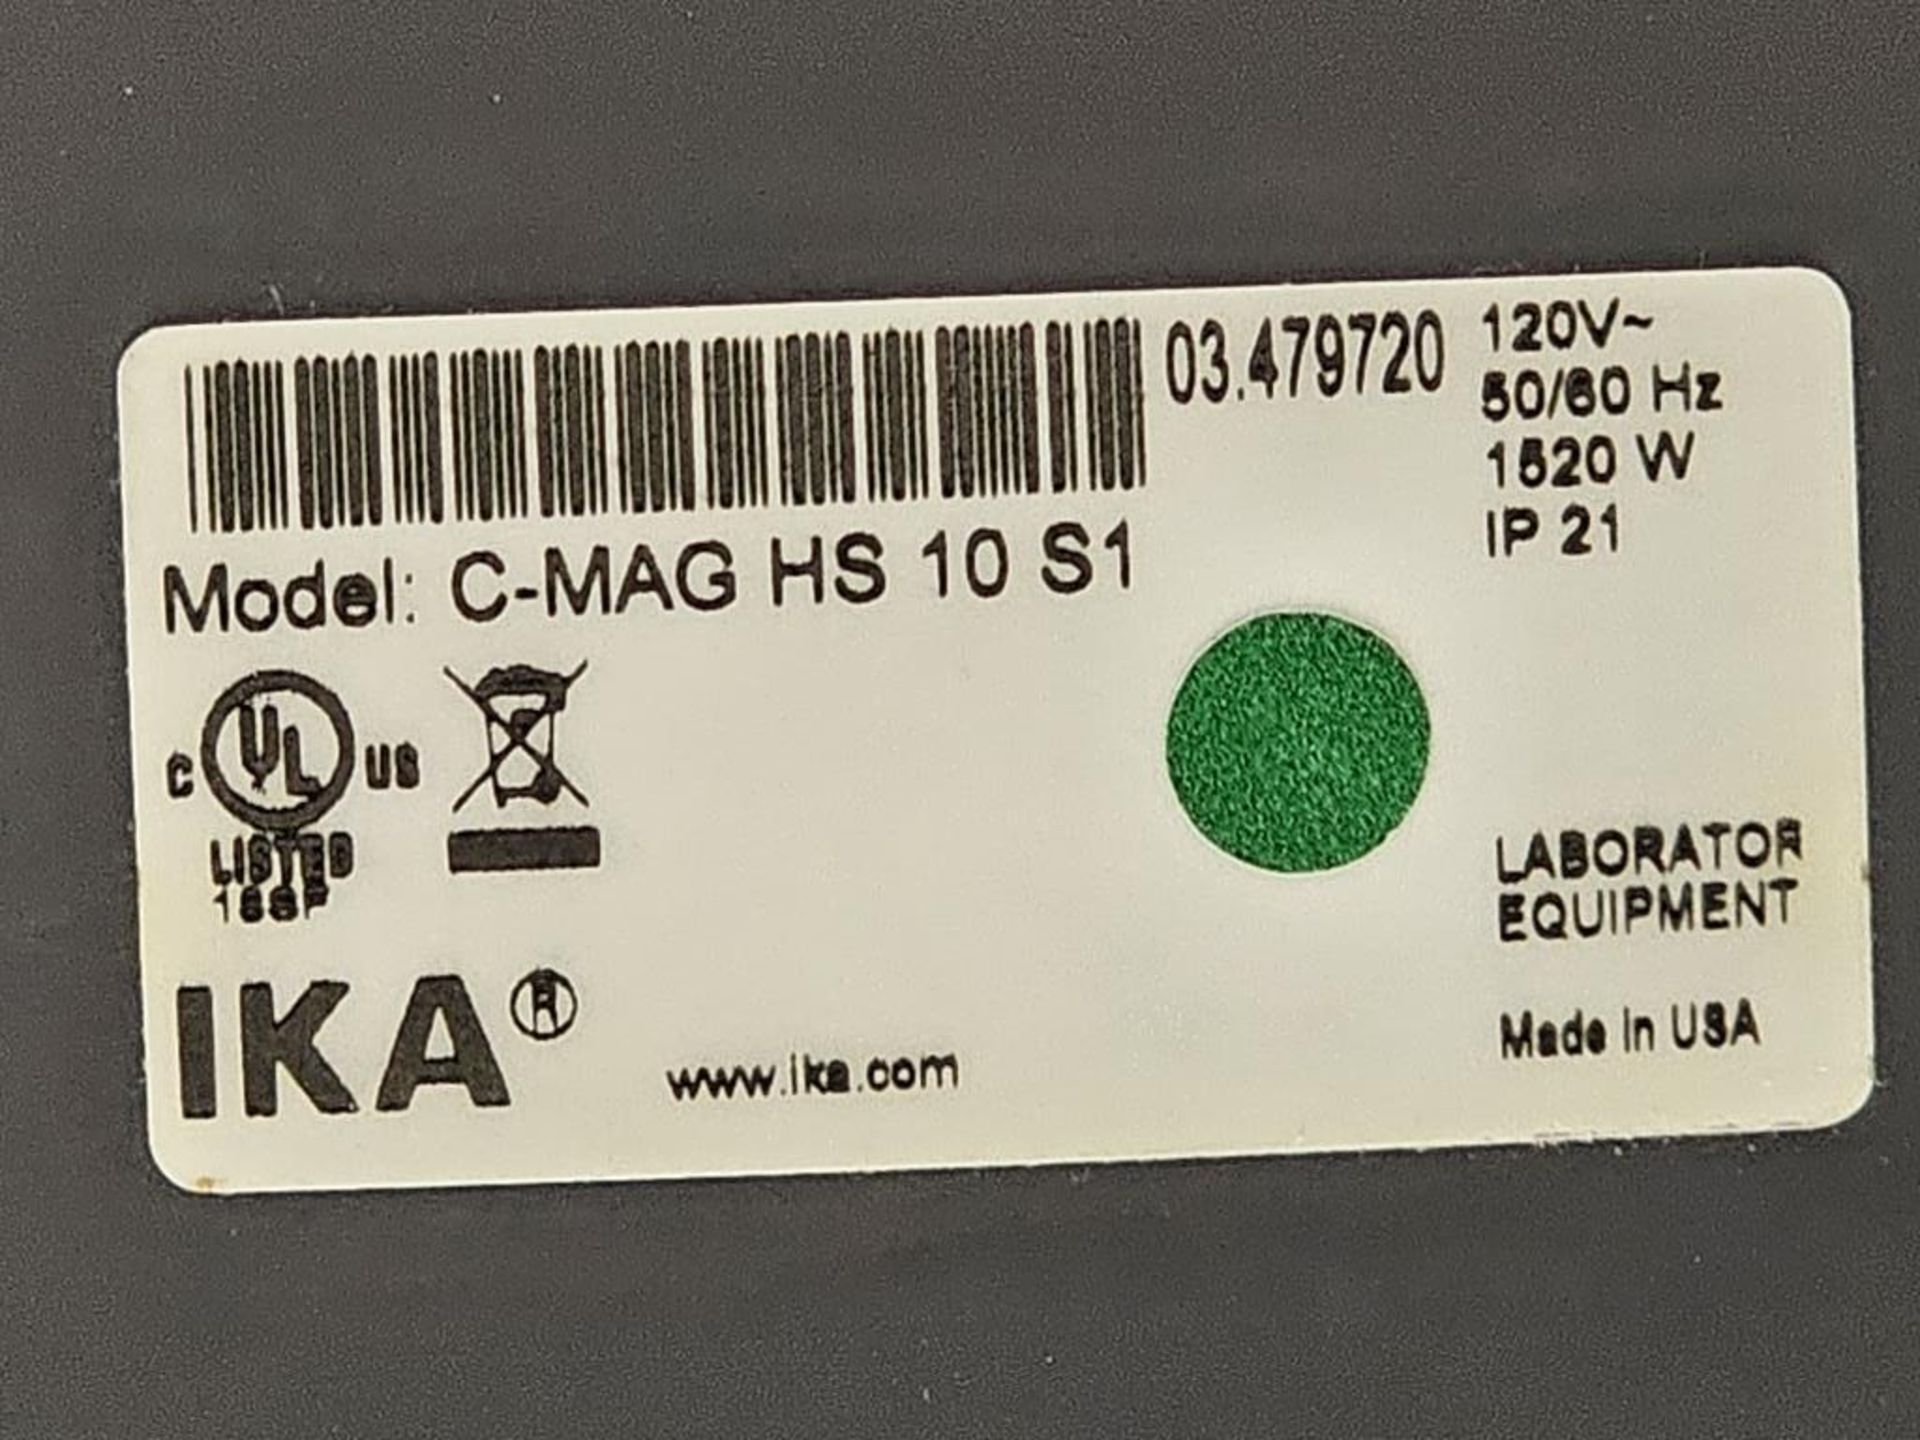 Ika C-MAG Model HS10 01 S1 10" x 10" Hot Plate Stirrer - Image 4 of 4